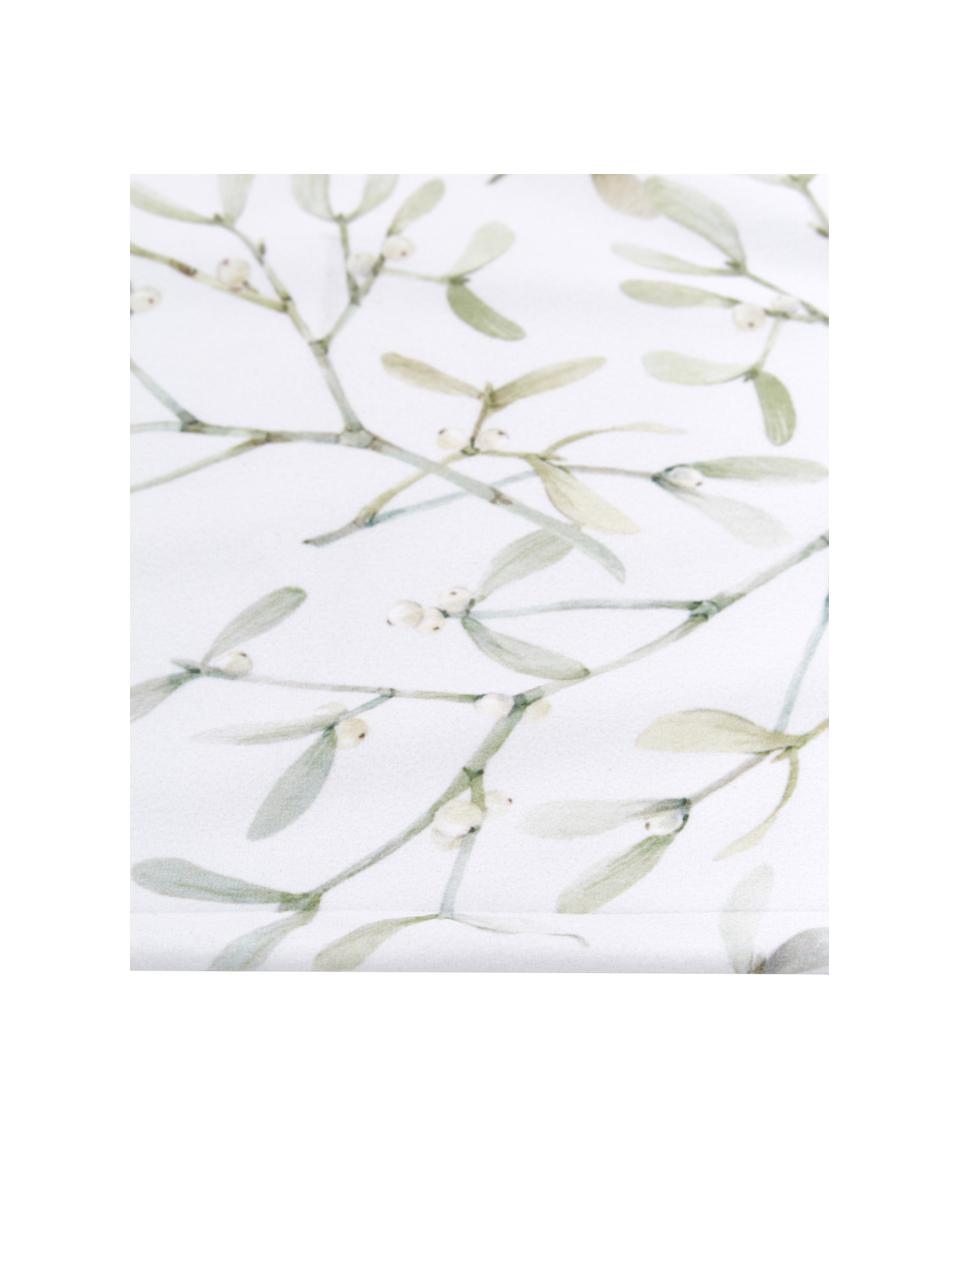 Bieżnik Fairytale, 100% poliester, Biały, odcienie zielonego, S 40 x D 145 cm